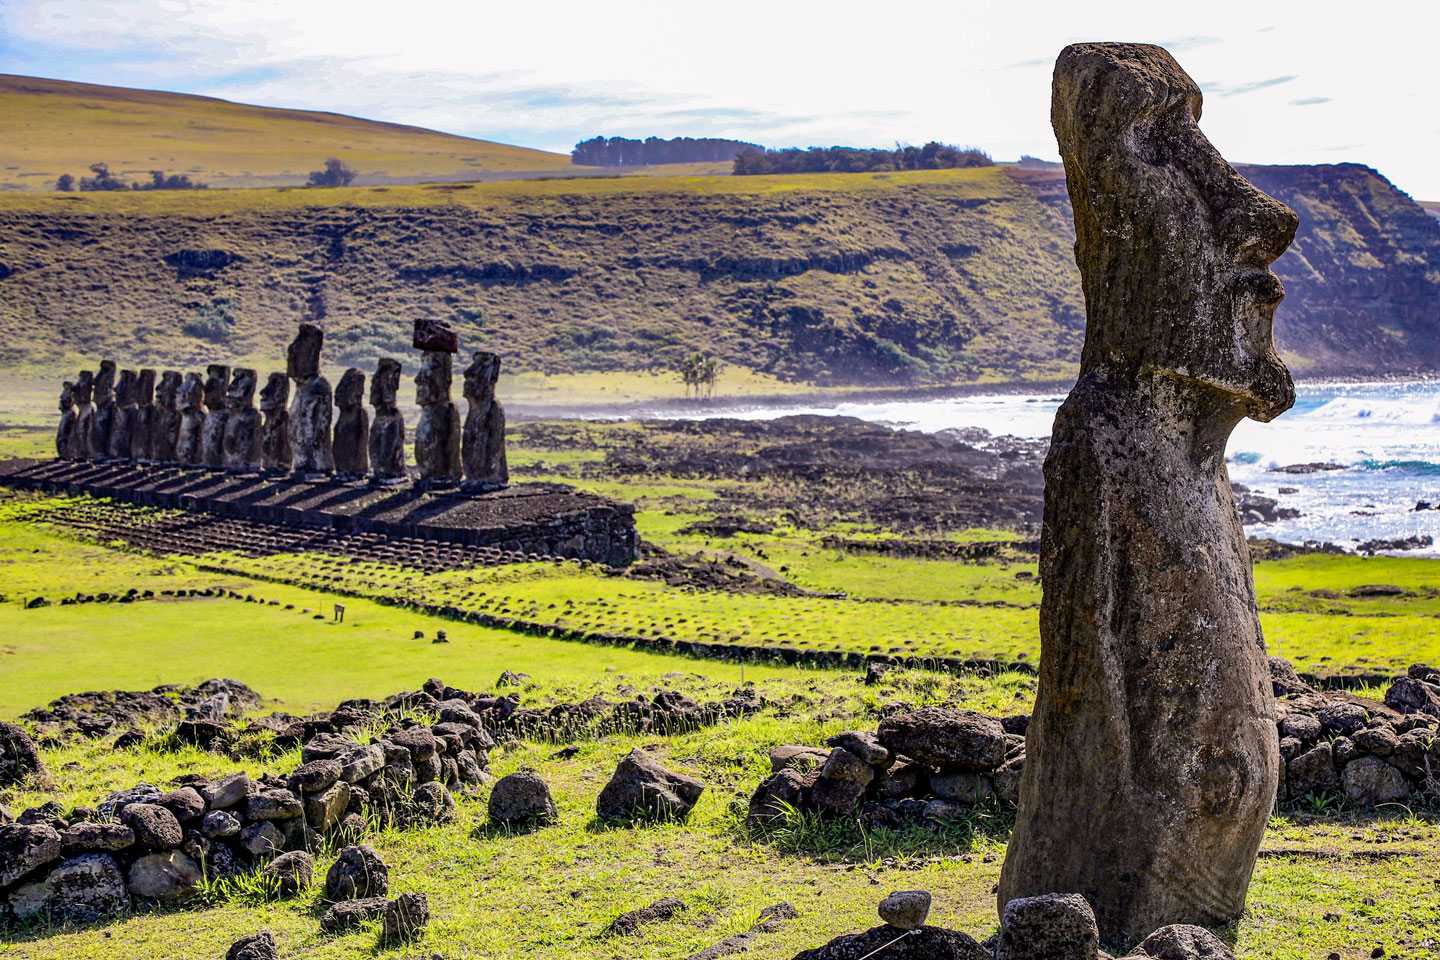 Moai figures on Easter Island (Rapa Nui), Polynesia.